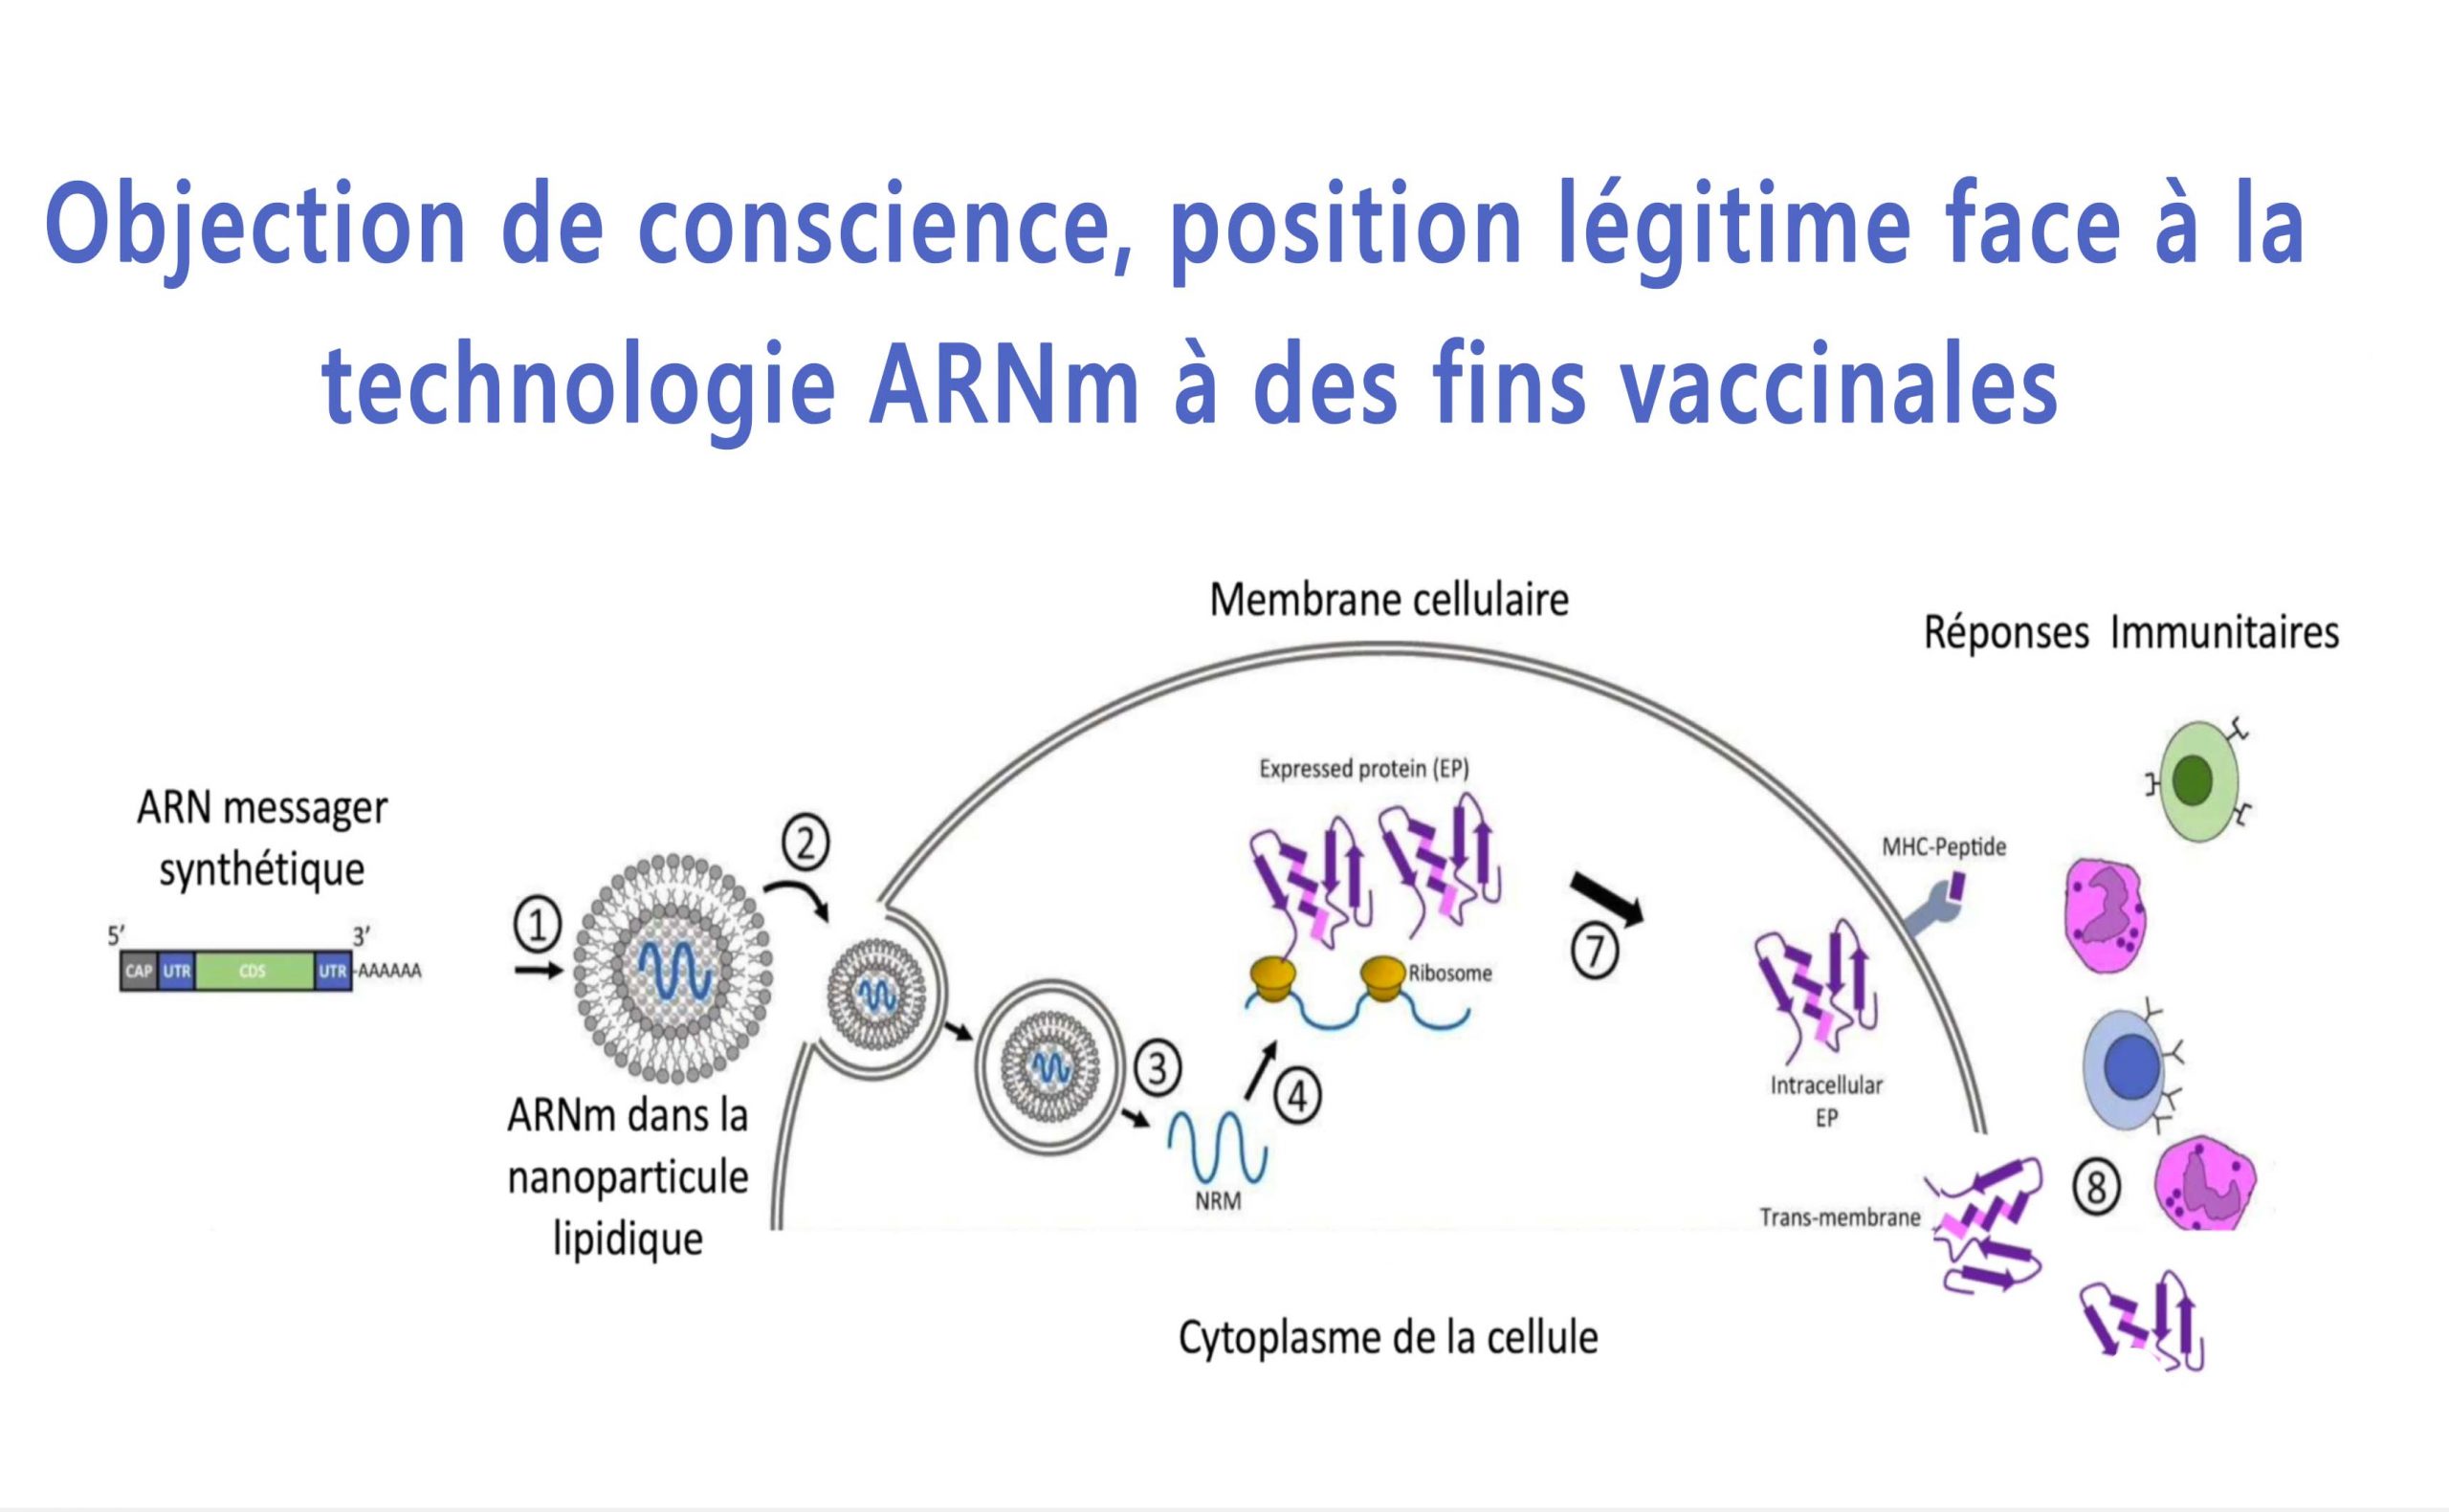 Objection de conscience, position légitime face à la technologie ARNm à des fins vaccinales